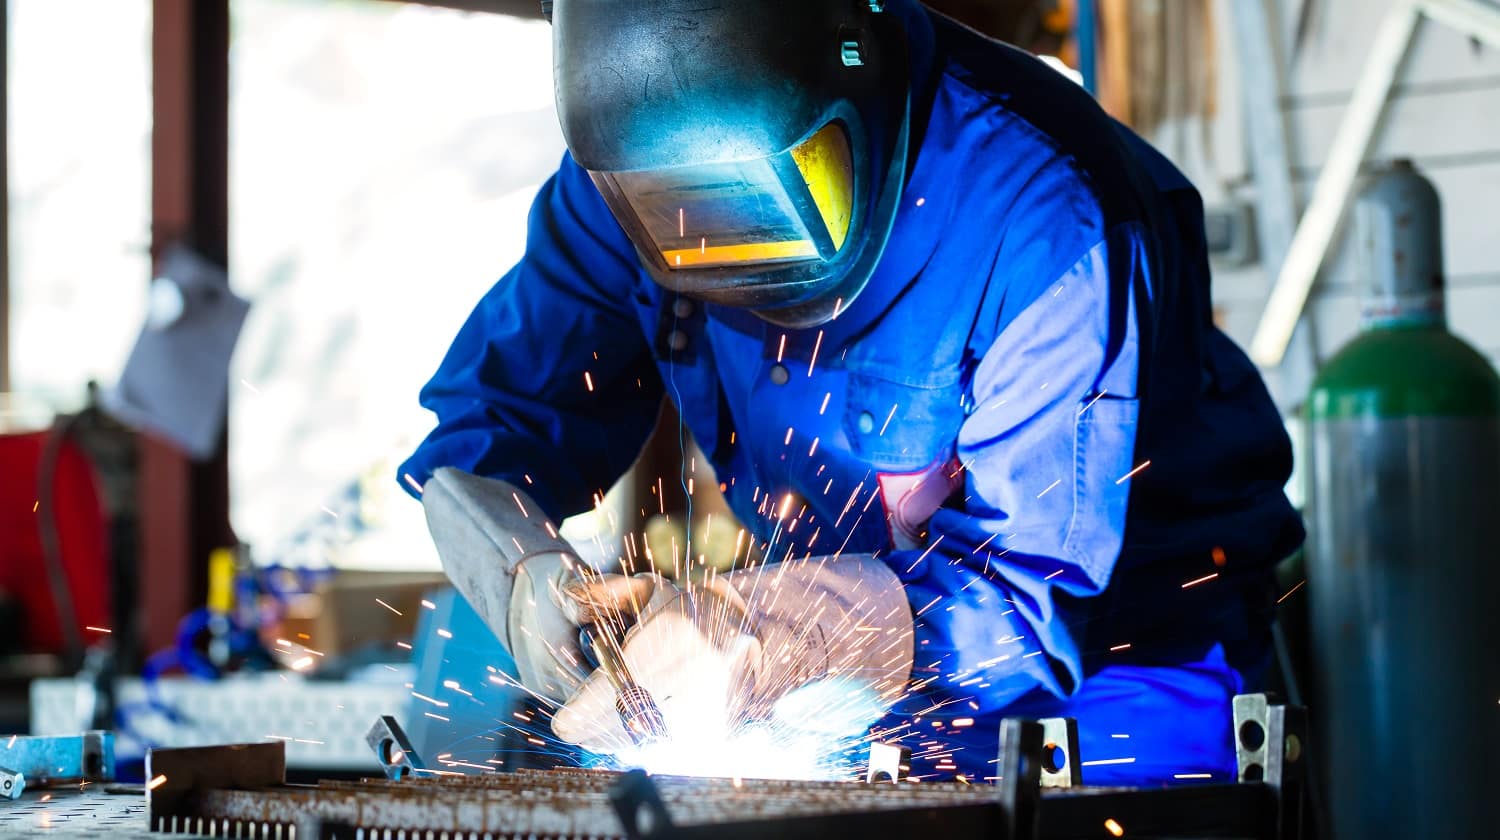 Welder bonding metal with welding device in workshop, lots of sparks to be seen, he wears welding googles